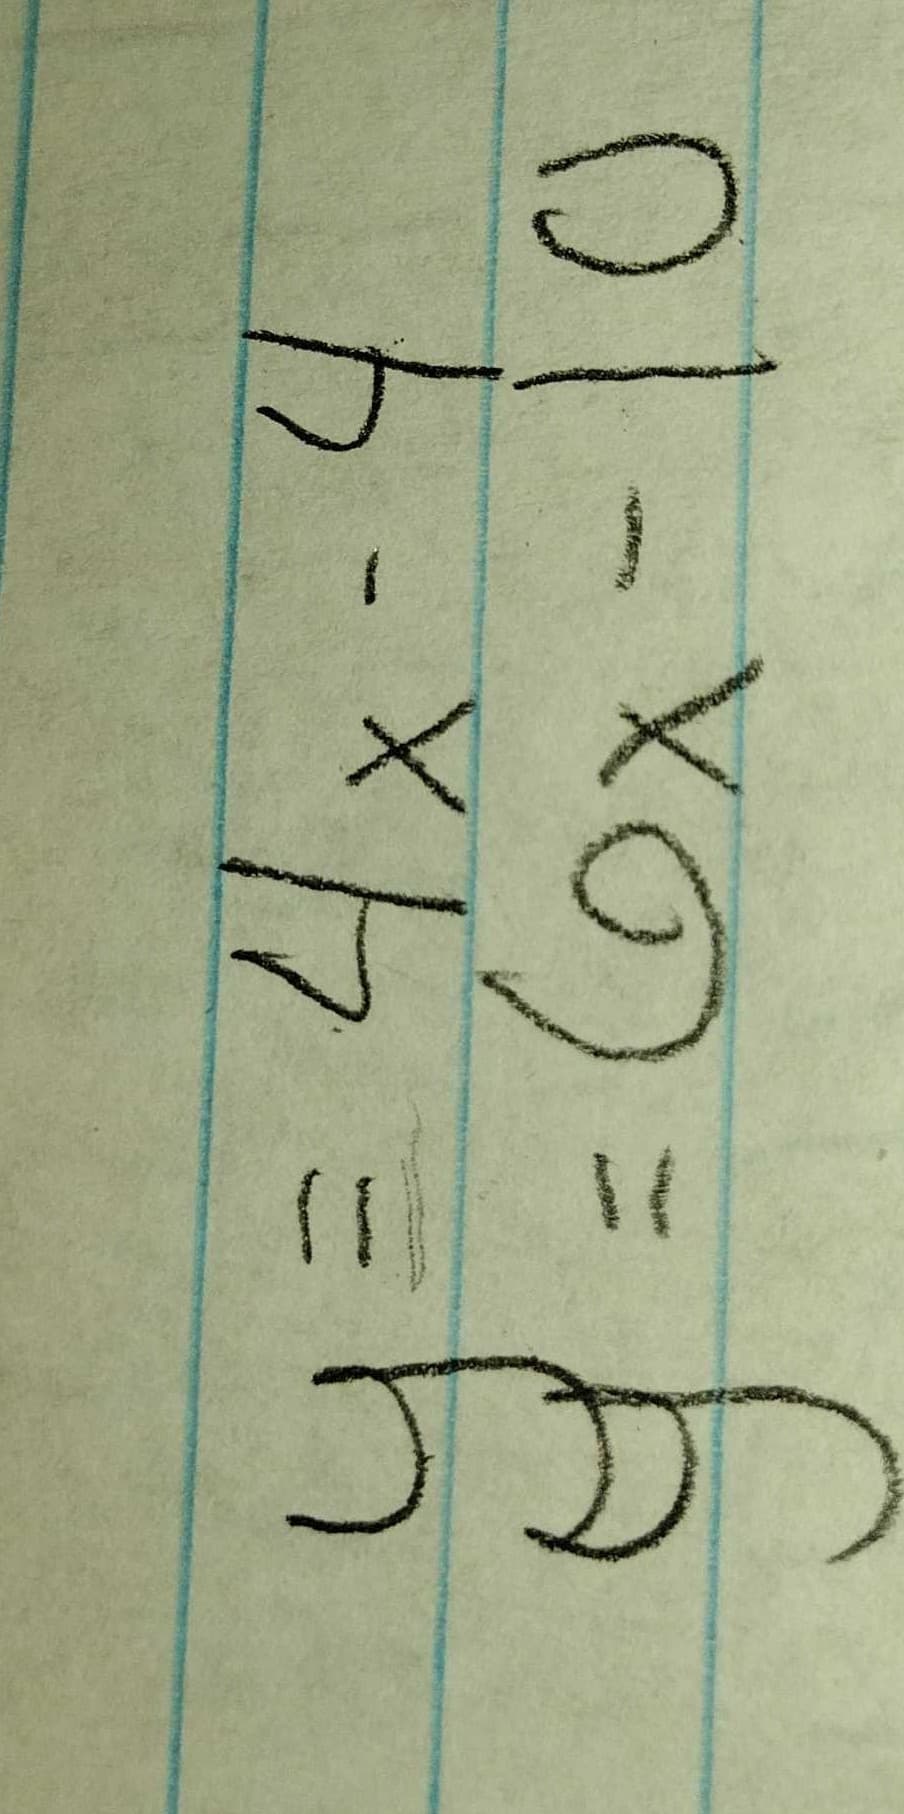 o1-Xの=
(ox
13D
7
